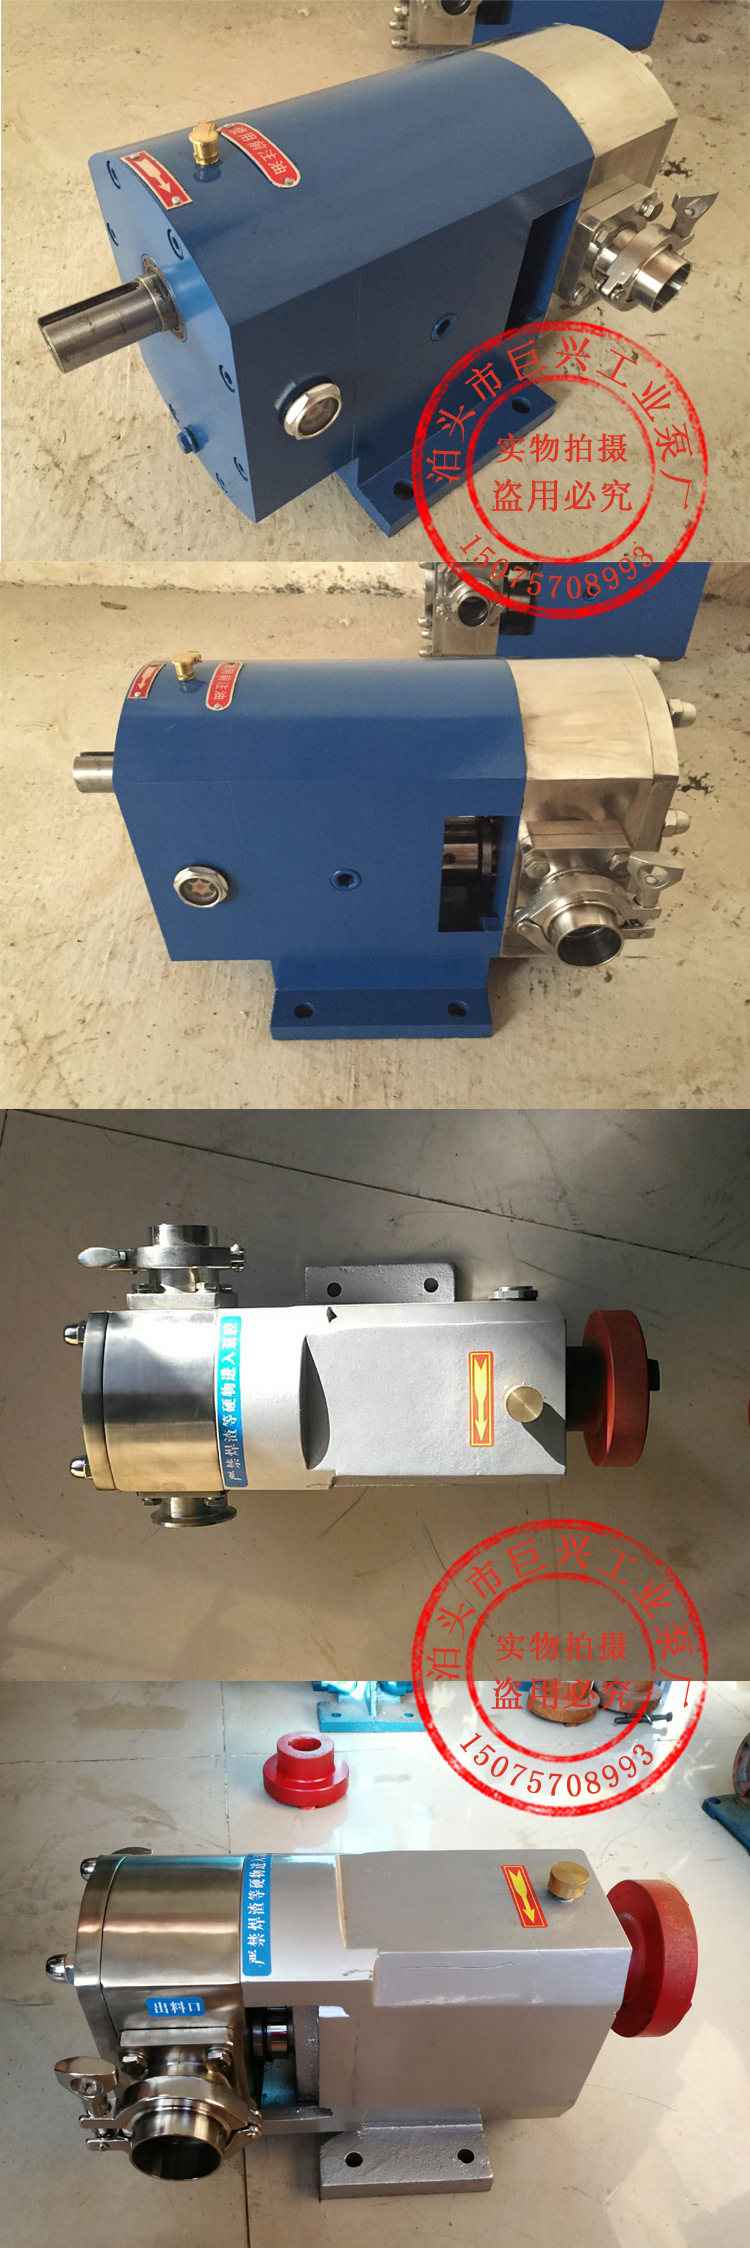 厂价销售 微型转子泵 卫生级凸轮泵 外贸货源 3rp凸轮转子泵示例图3